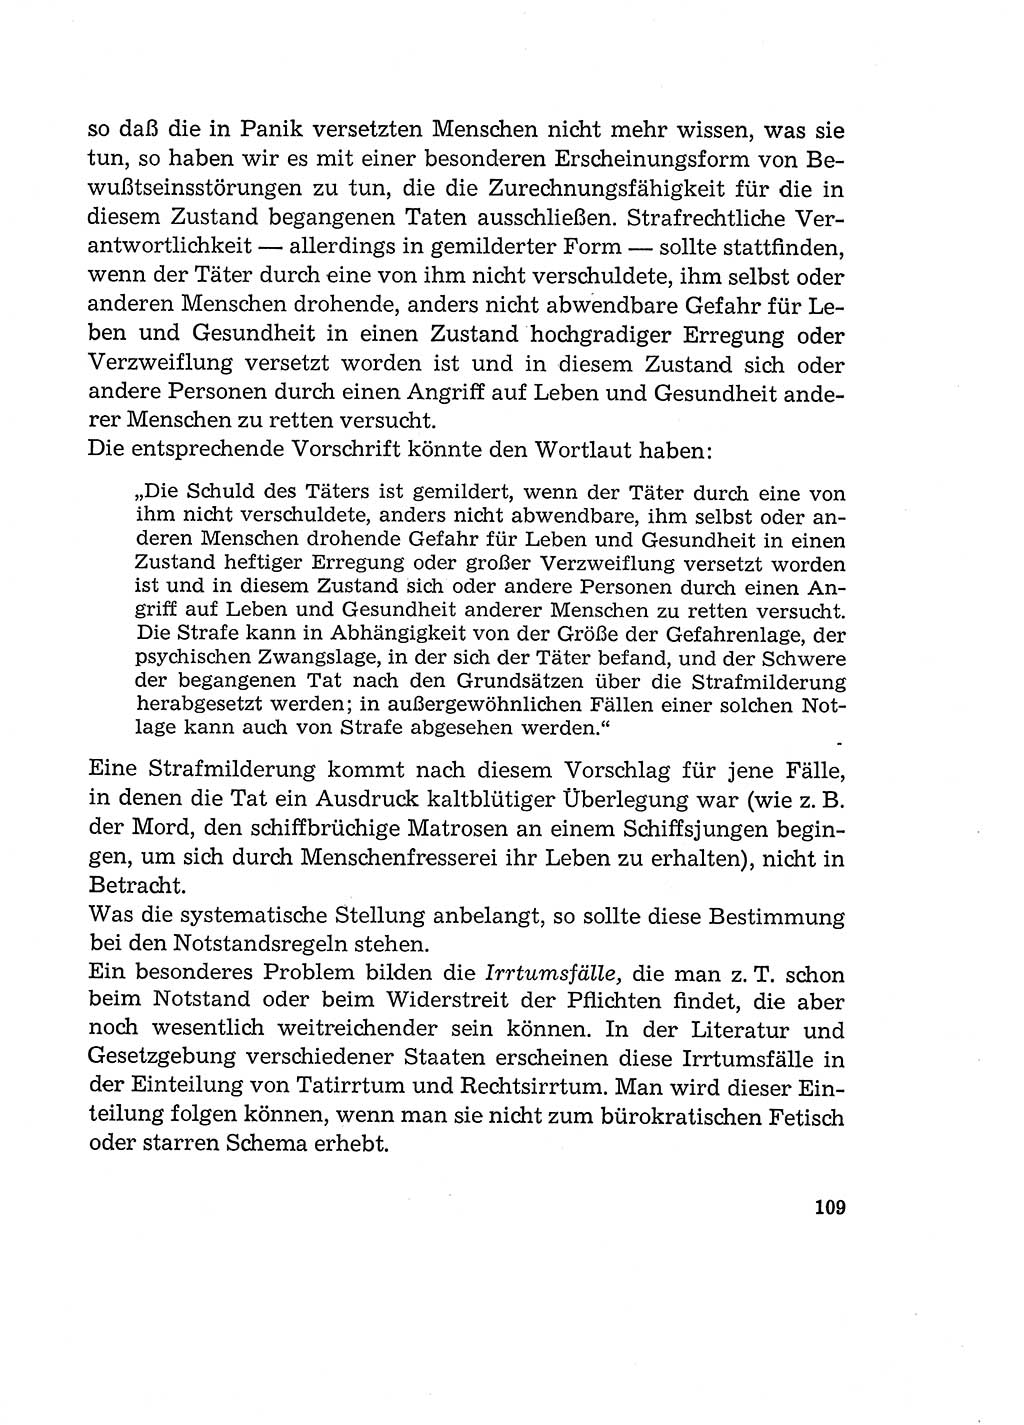 Verantwortung und Schuld im neuen Strafgesetzbuch (StGB) [Deutsche Demokratische Republik (DDR)] 1964, Seite 109 (Verantw. Sch. StGB DDR 1964, S. 109)